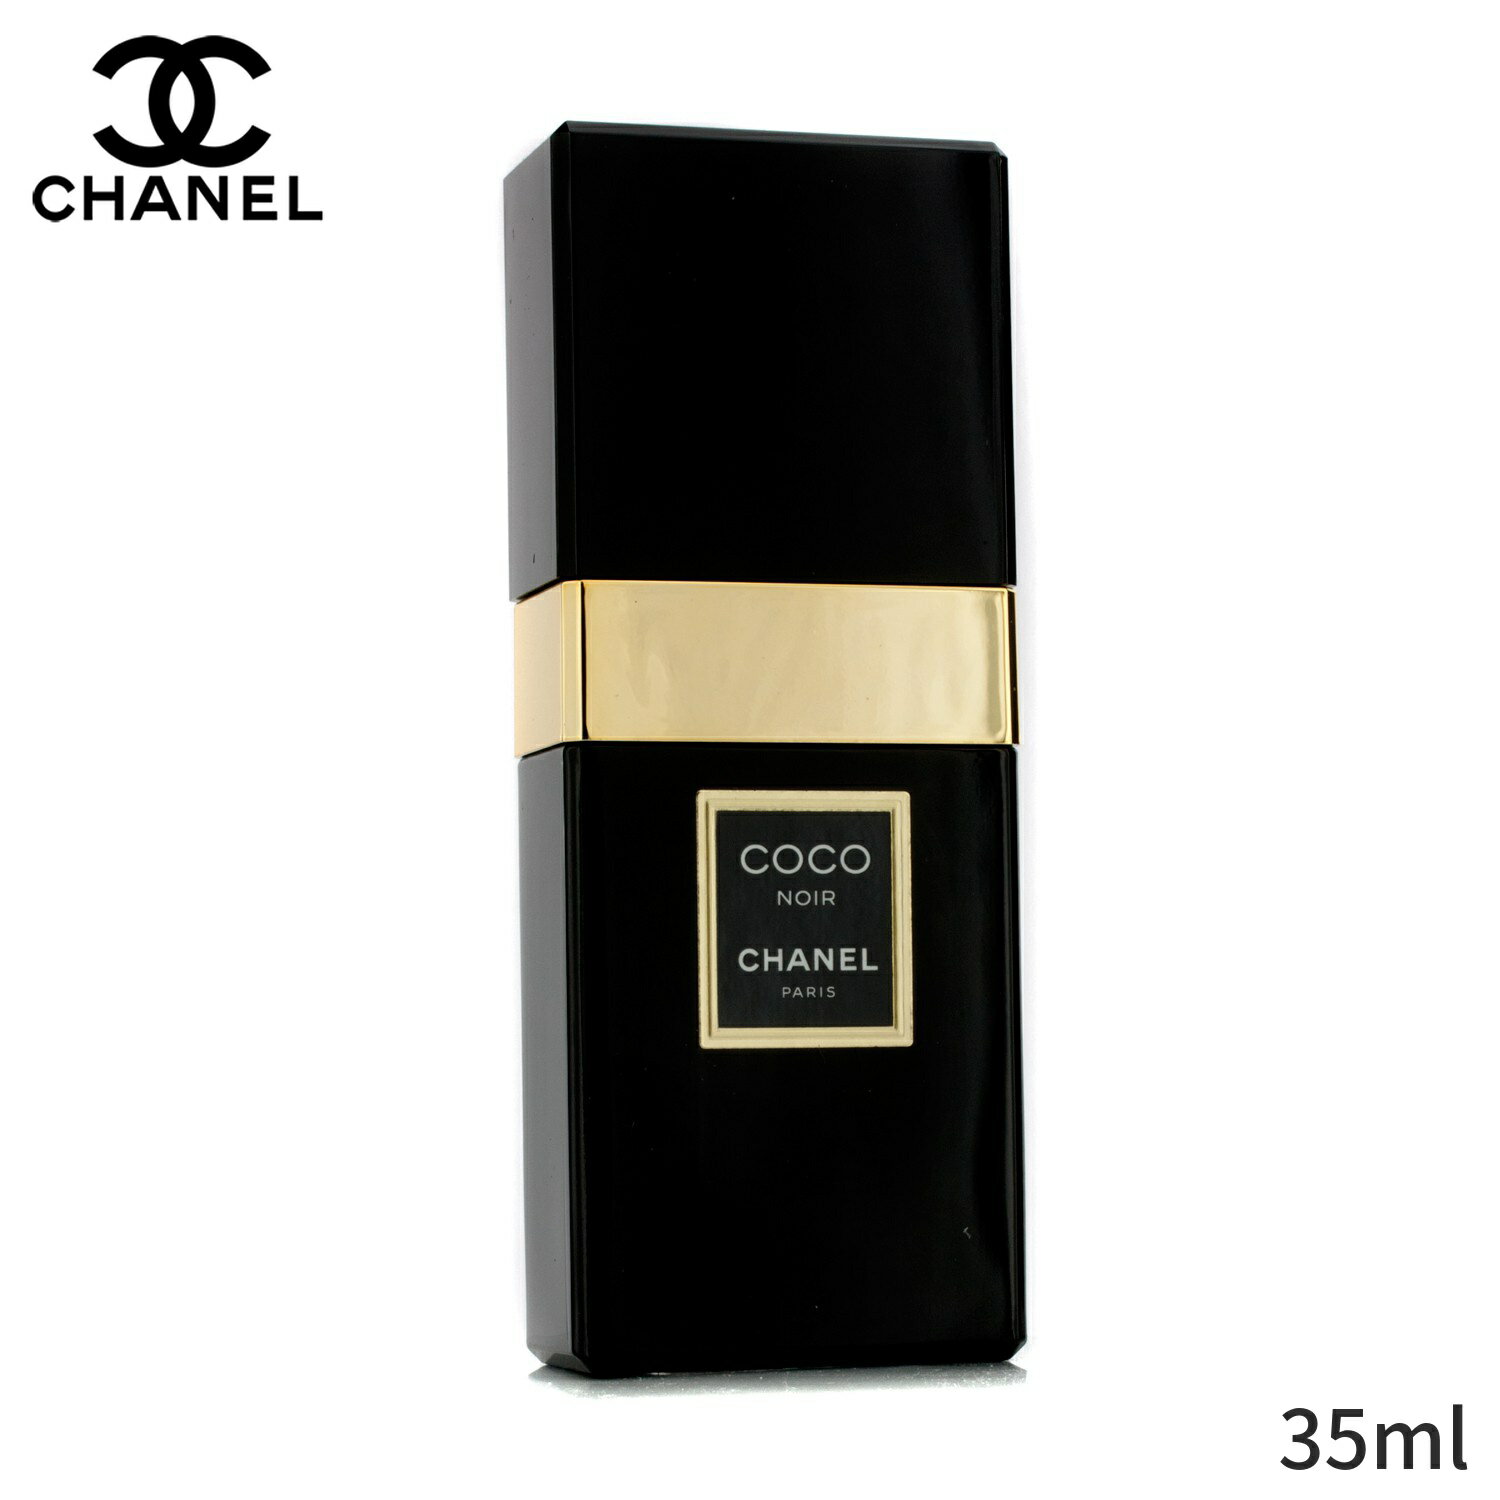 シャネル 香水 Chanel ココ ノワール EDP SP 35ml レディース 女性用 フレグランス 誕生日プレゼント ギフト 人気 ブランド コスメ